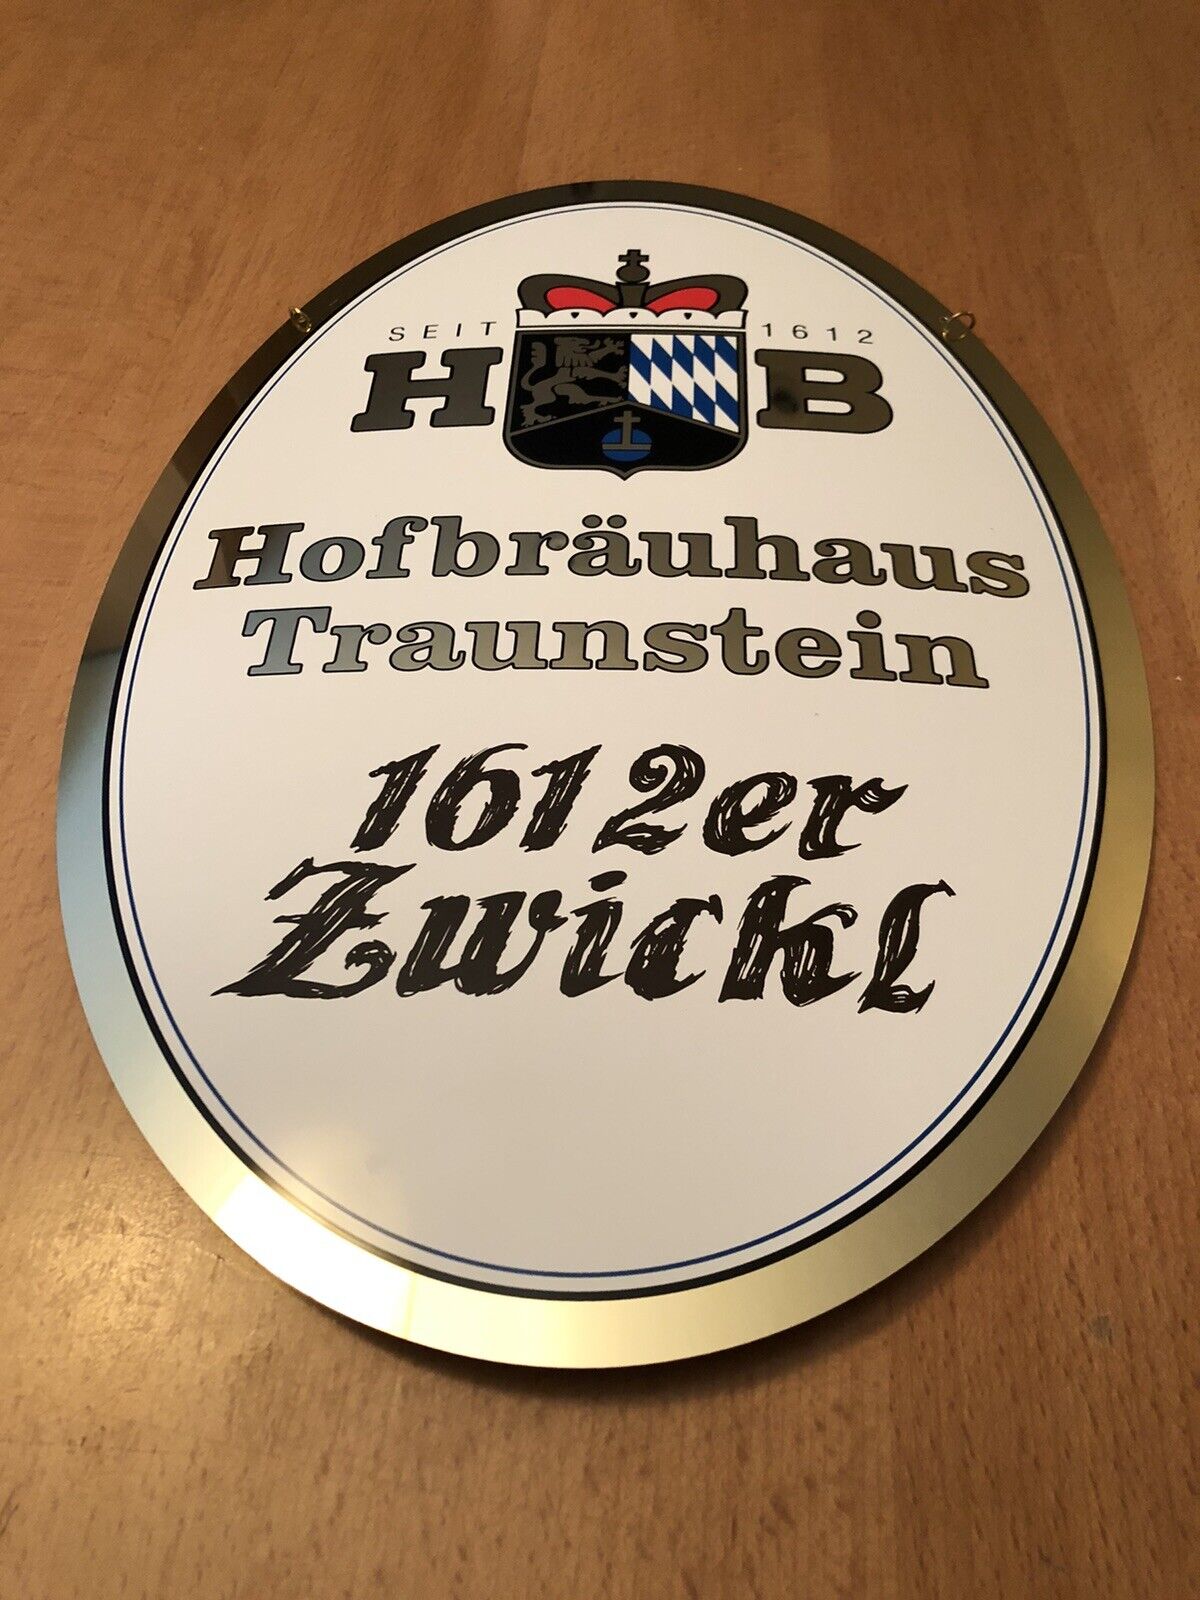 Hofbrau Traunstein Brewery Metal Beer Sign. 1612er Zwickl. Brand New.